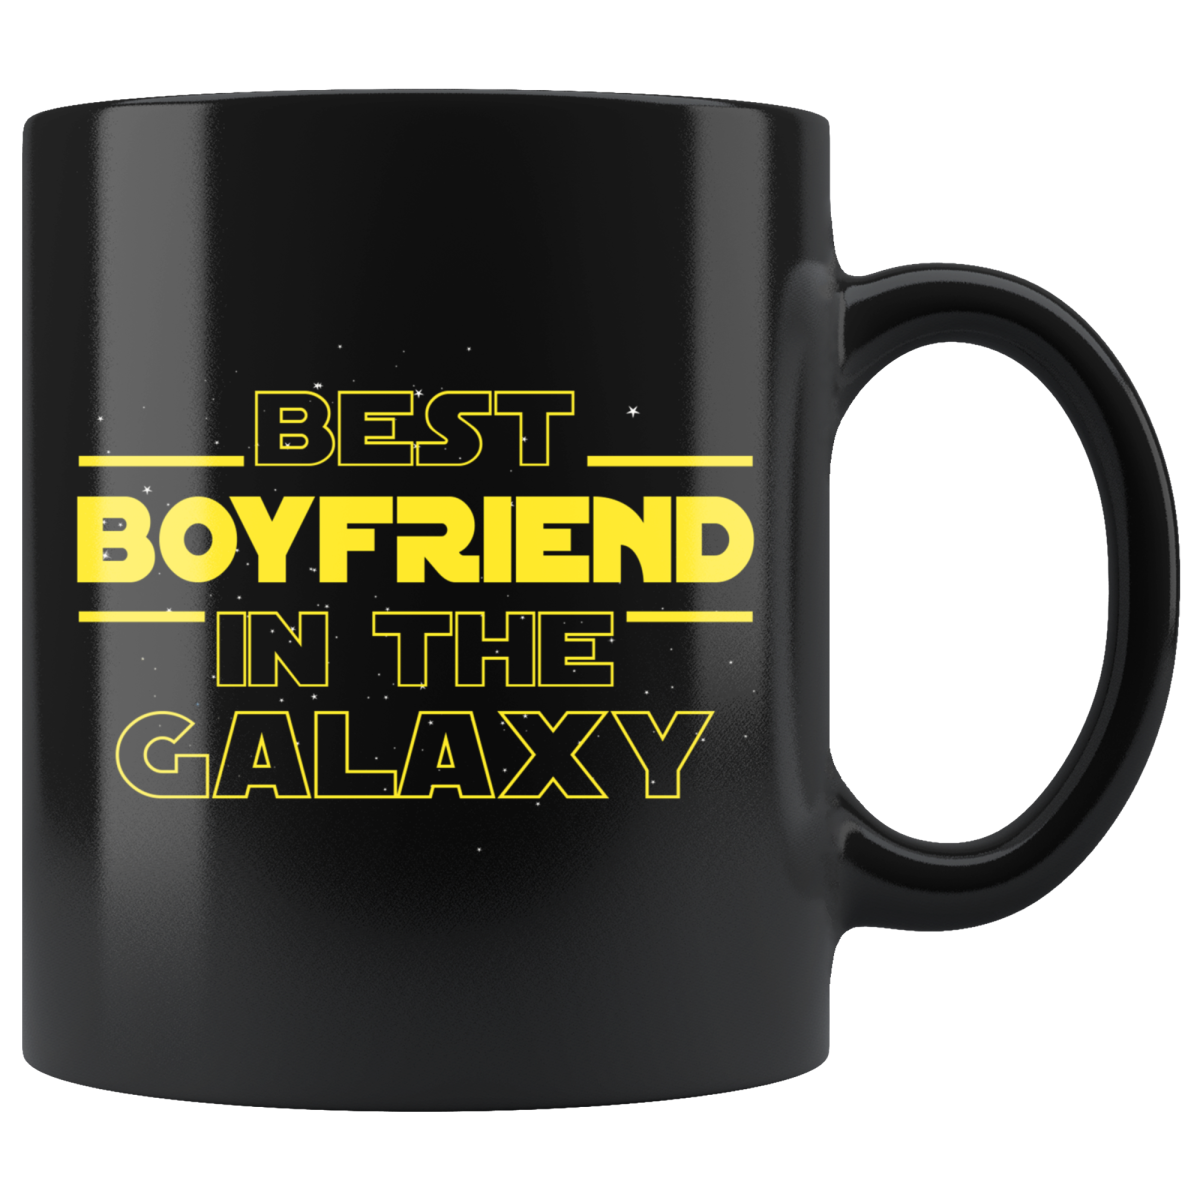 Yoda Best Lawyer Coffee Mug, Yoda Mug, Yoda Lawyer Mug, Funny Lawyer Gift 